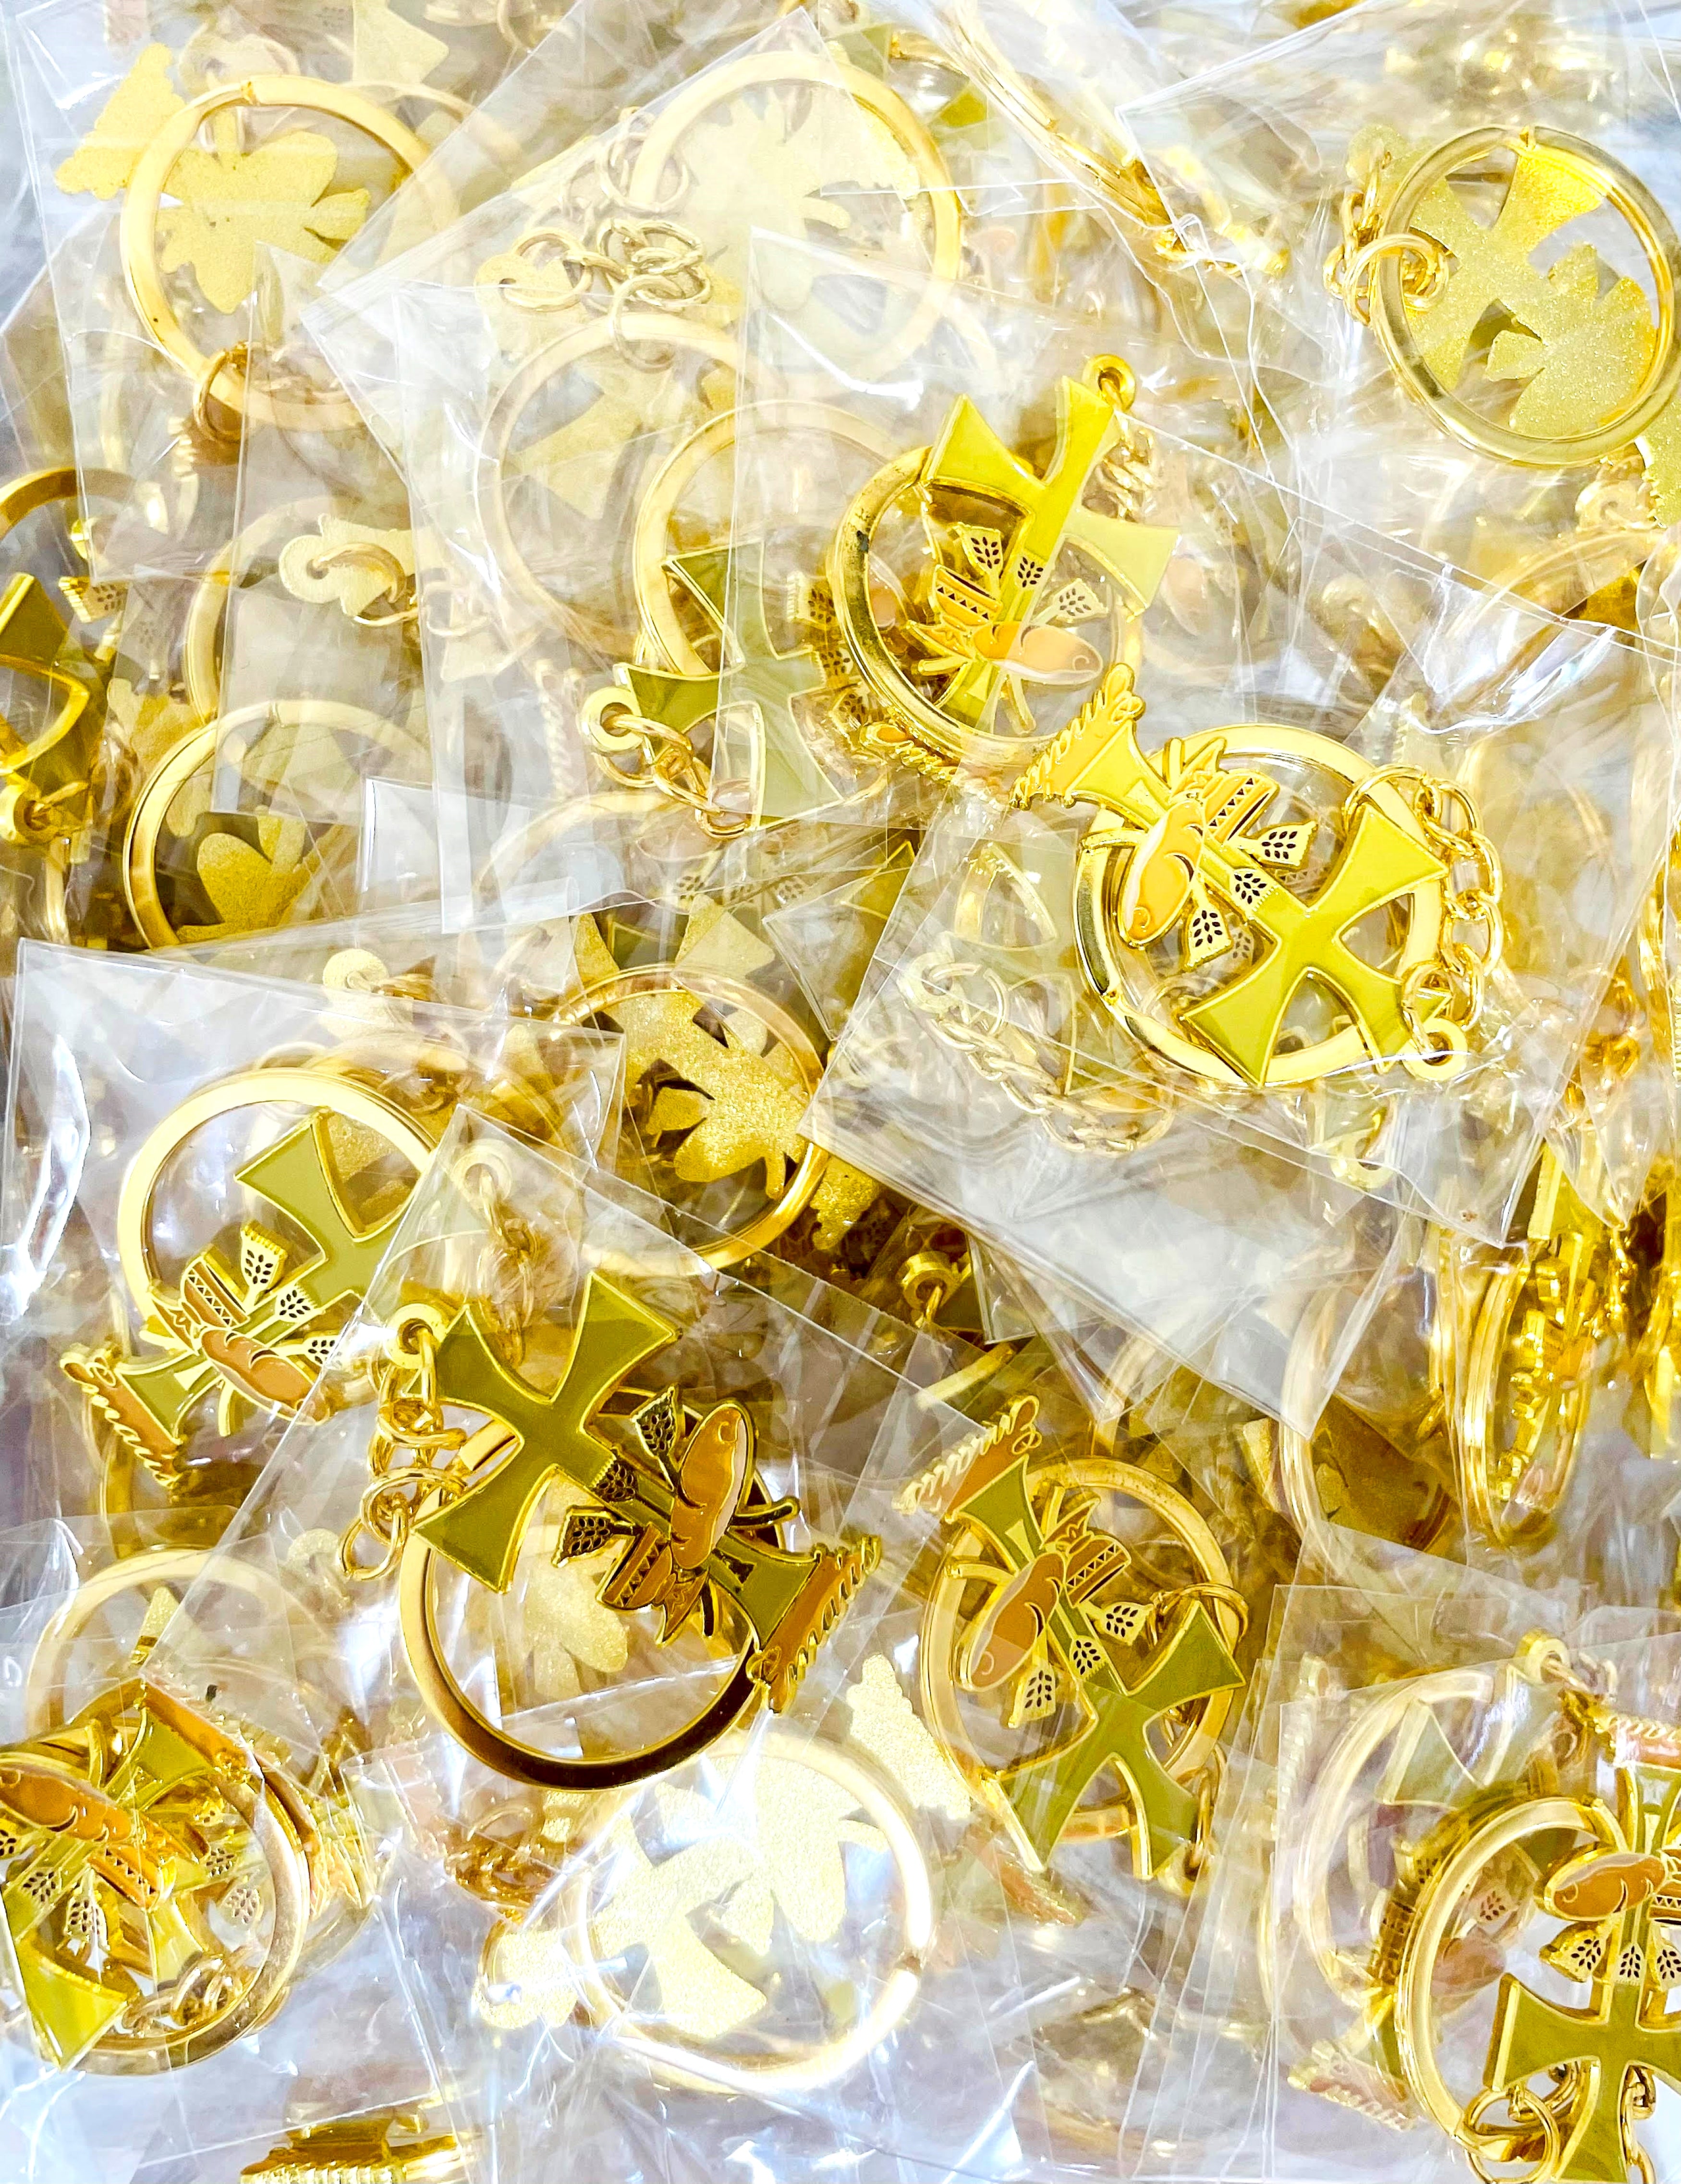 Emmaus yellow keychain package of 12 units special for retreats made of golden metal - Llavero de Emaús amarillo, paquete de 12 unidades especial para retiros hecho en metal dorado